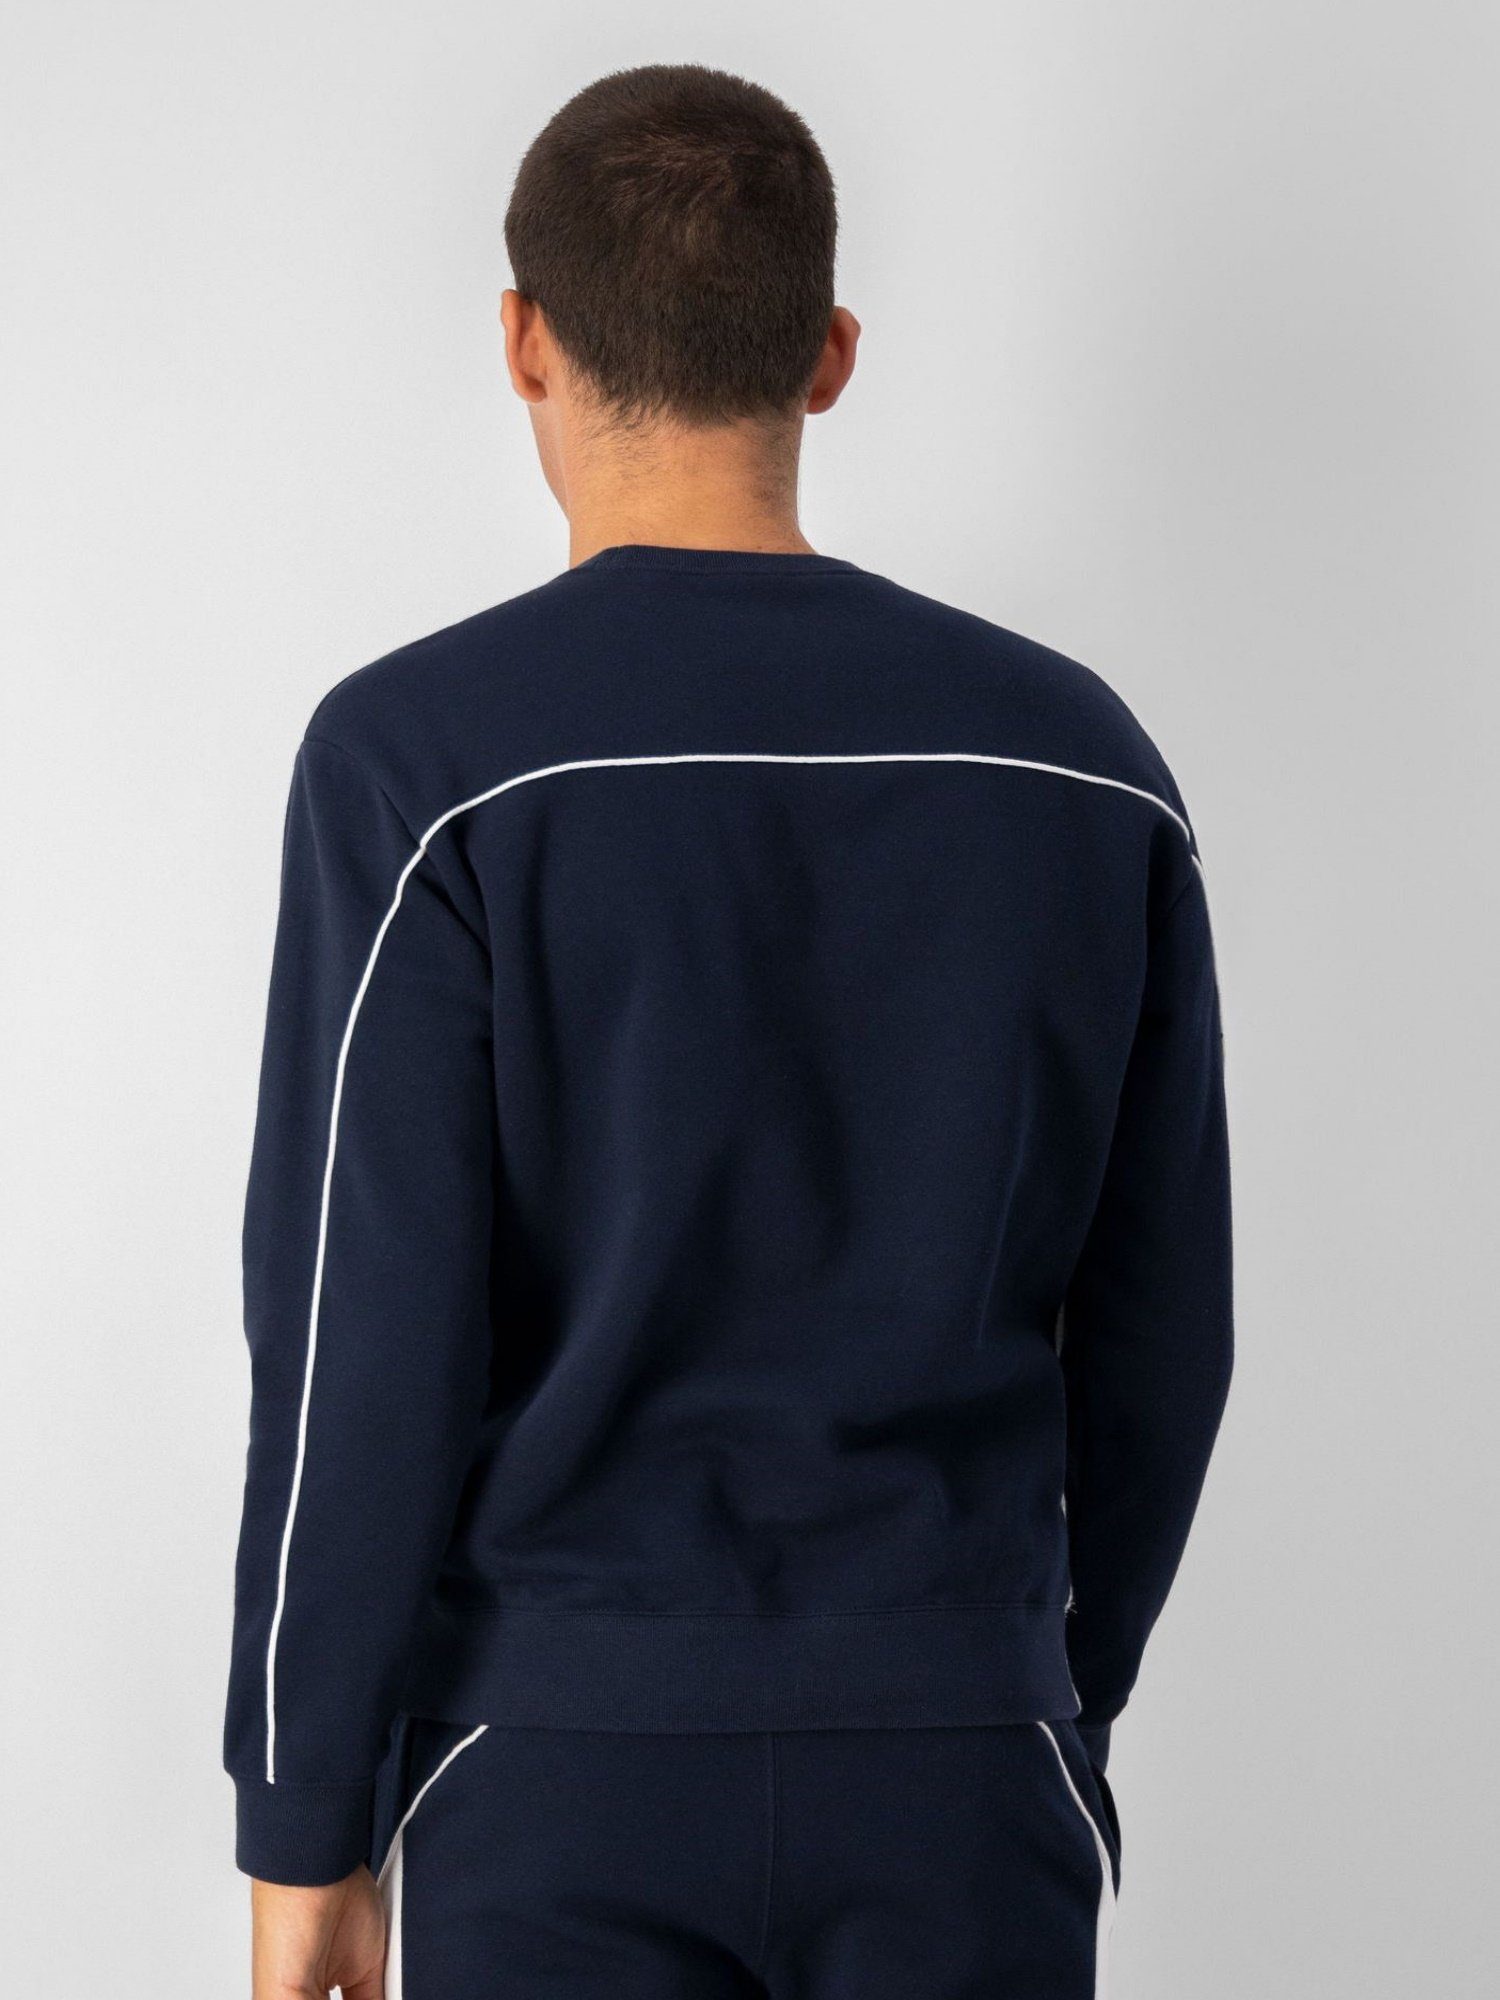 Pullover in Champion Farbblockoptik Sweatshirt und blau Fleece-Sweatshirt